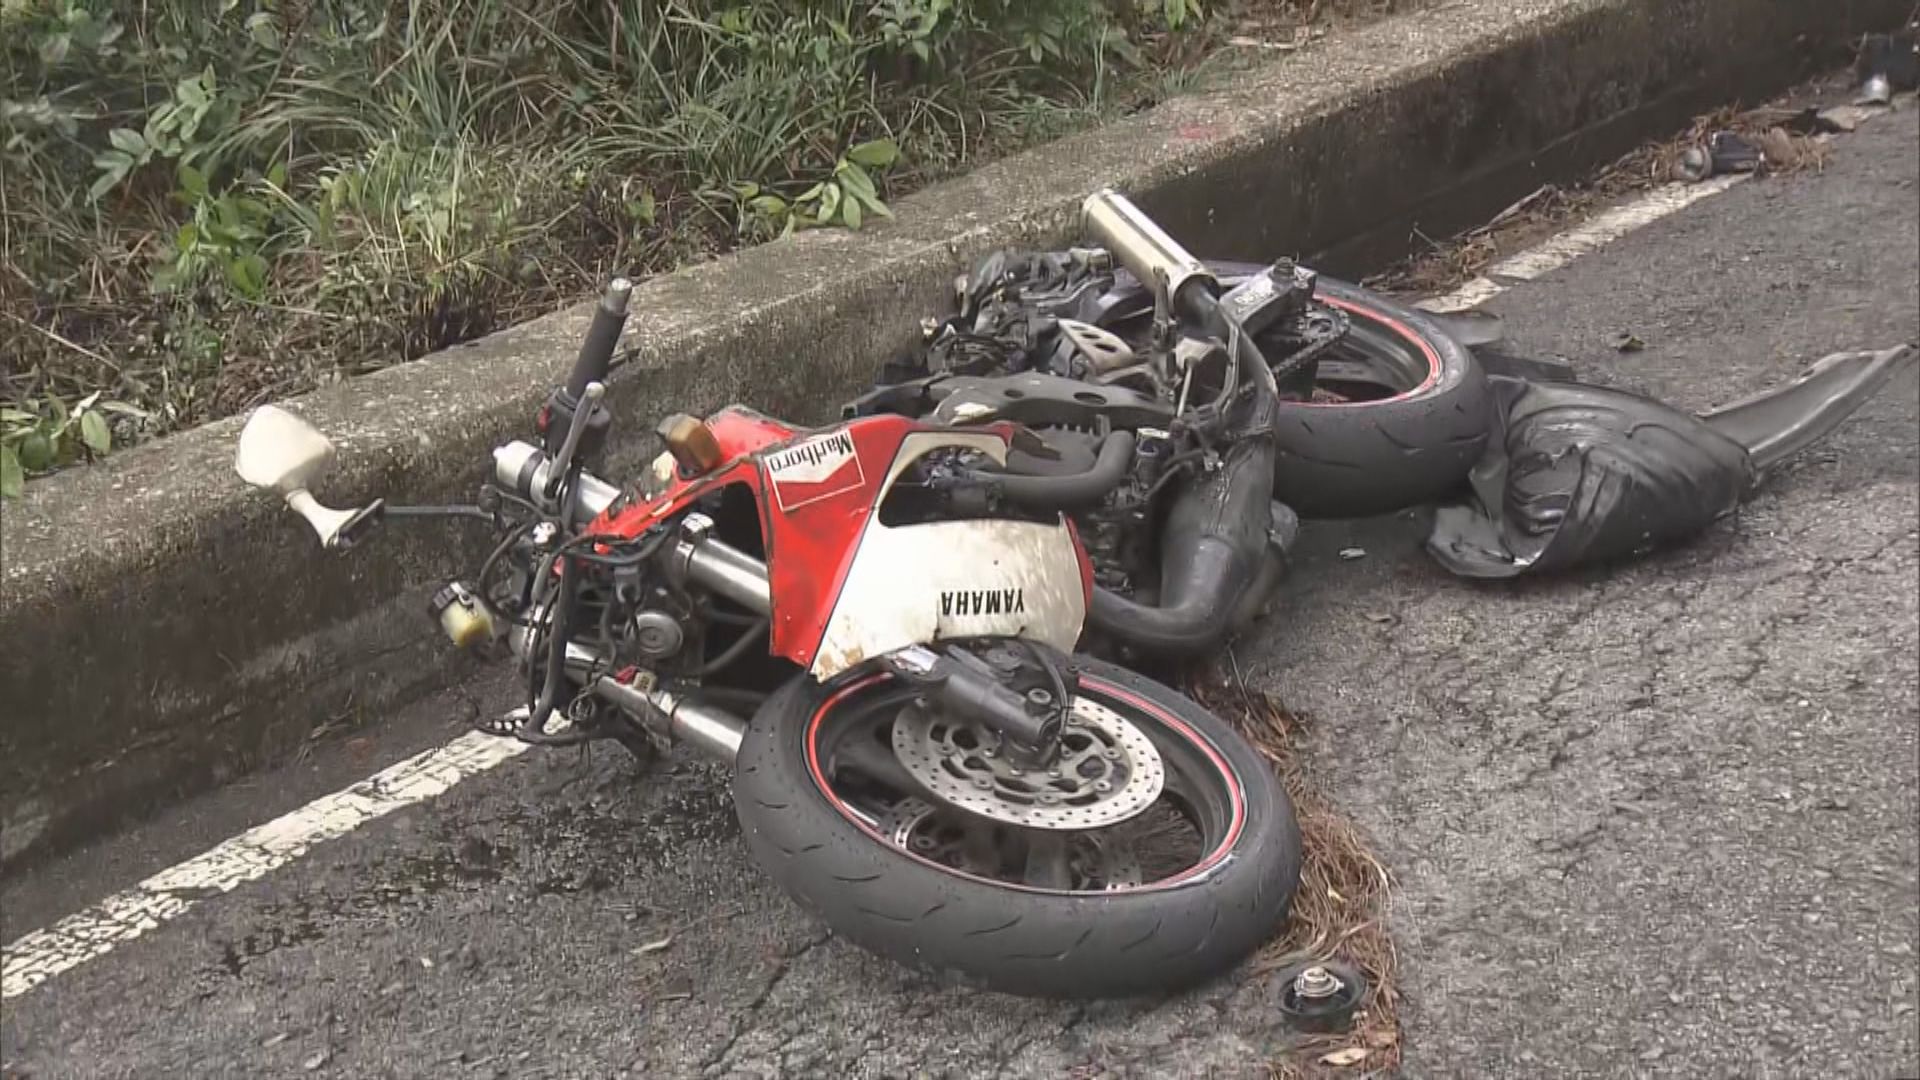 石澳電單車私家車相撞　電單車司機傷重死亡